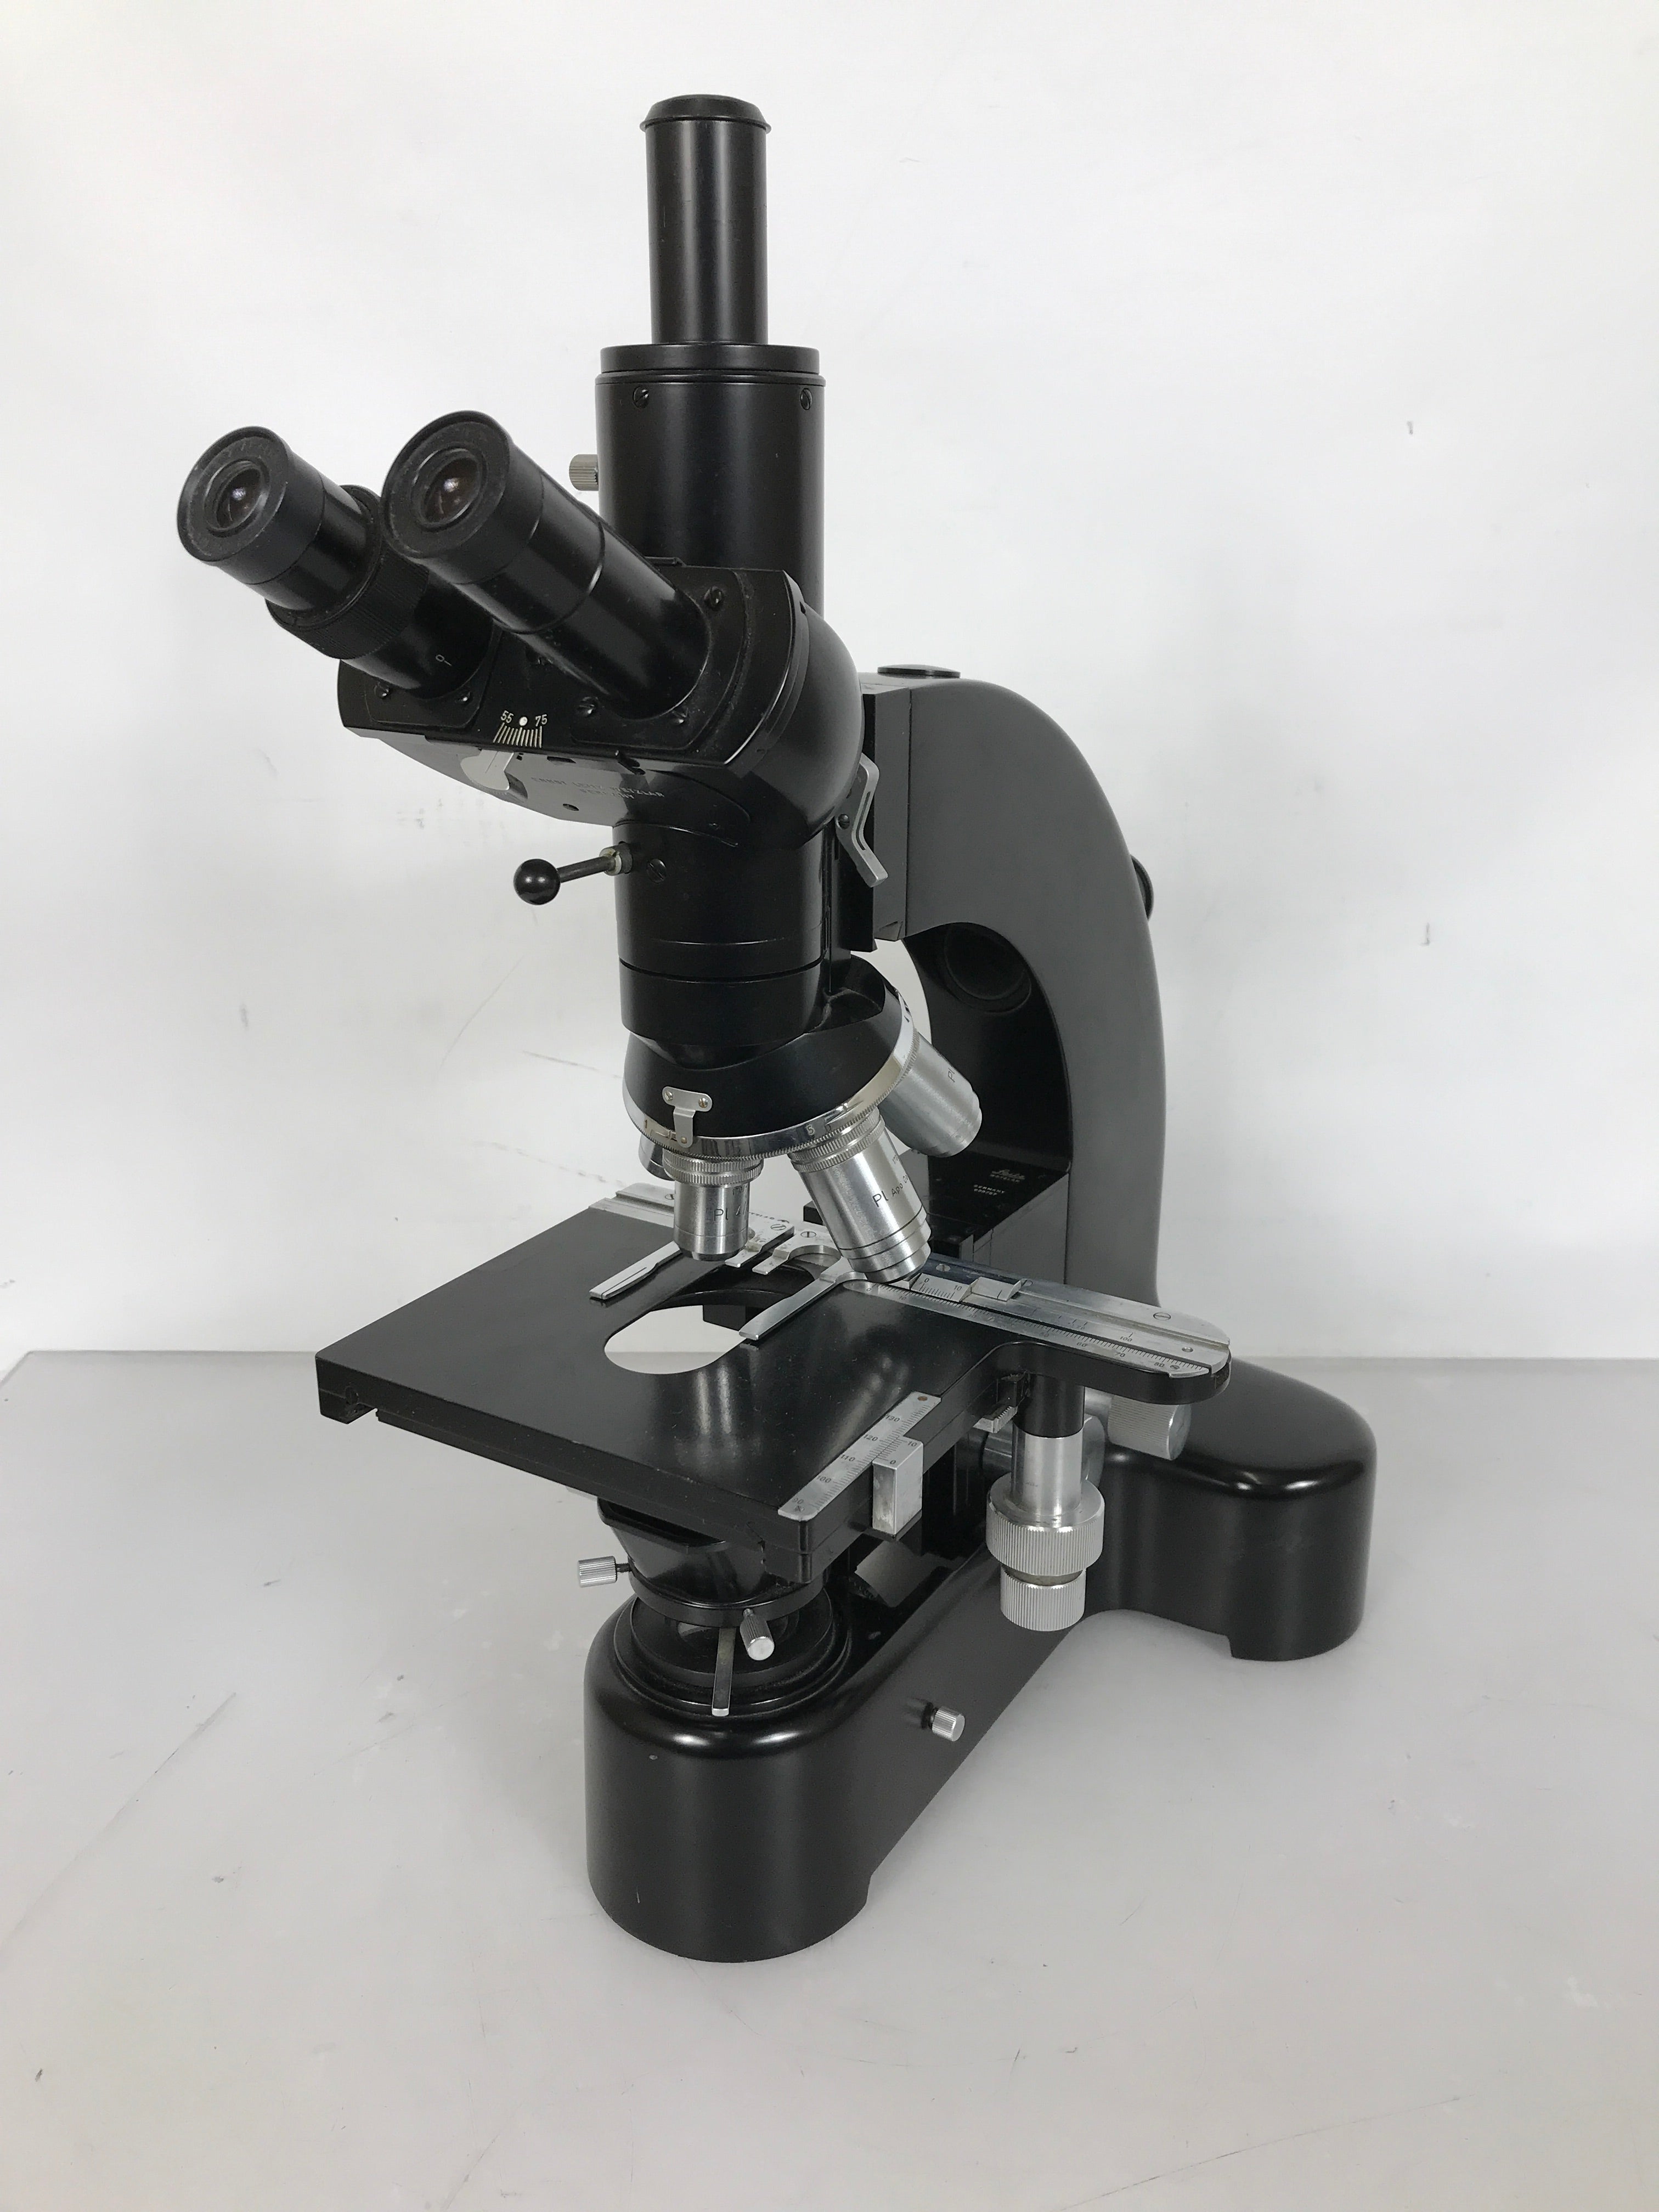 Leitz Wetzlar Ortholux Trinocular Microscope w/ 5 Objectives Germany